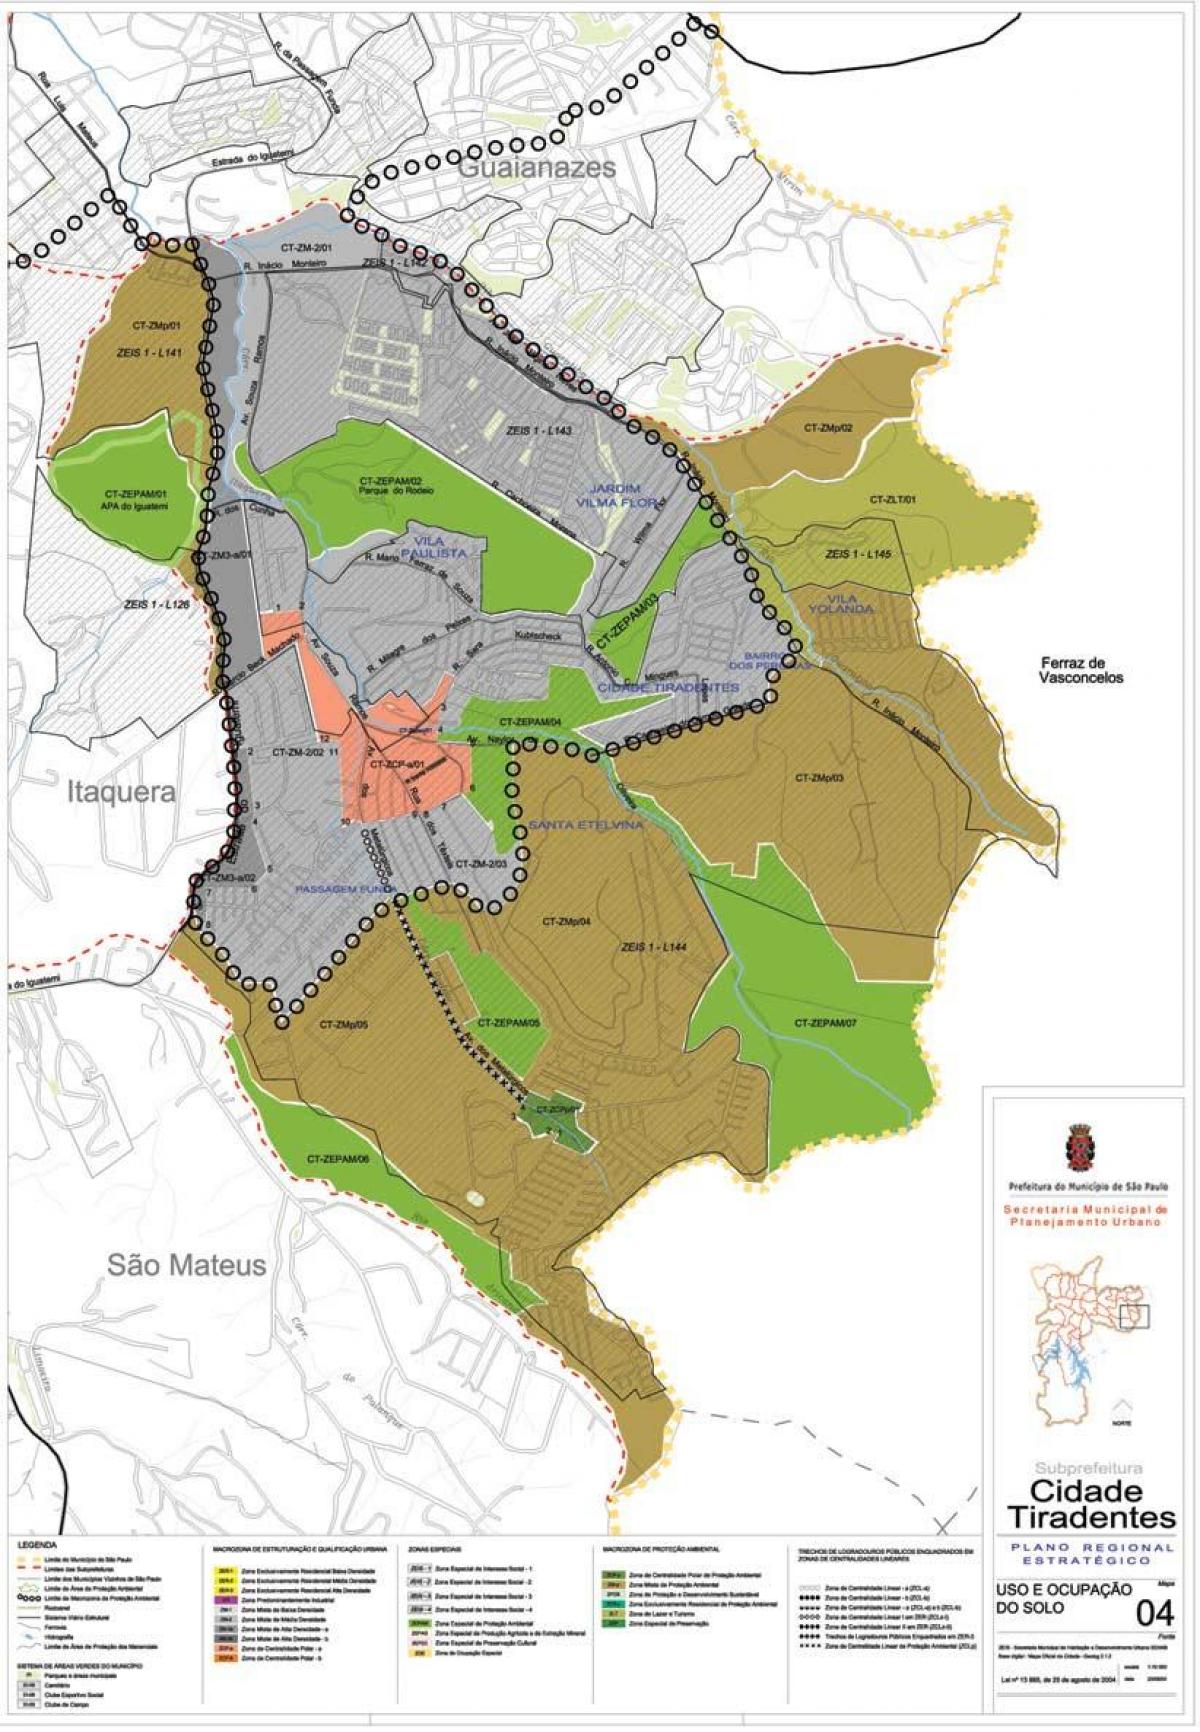 Zemljevid Cidade Tiradentes Sao Paulo - Poklic tal